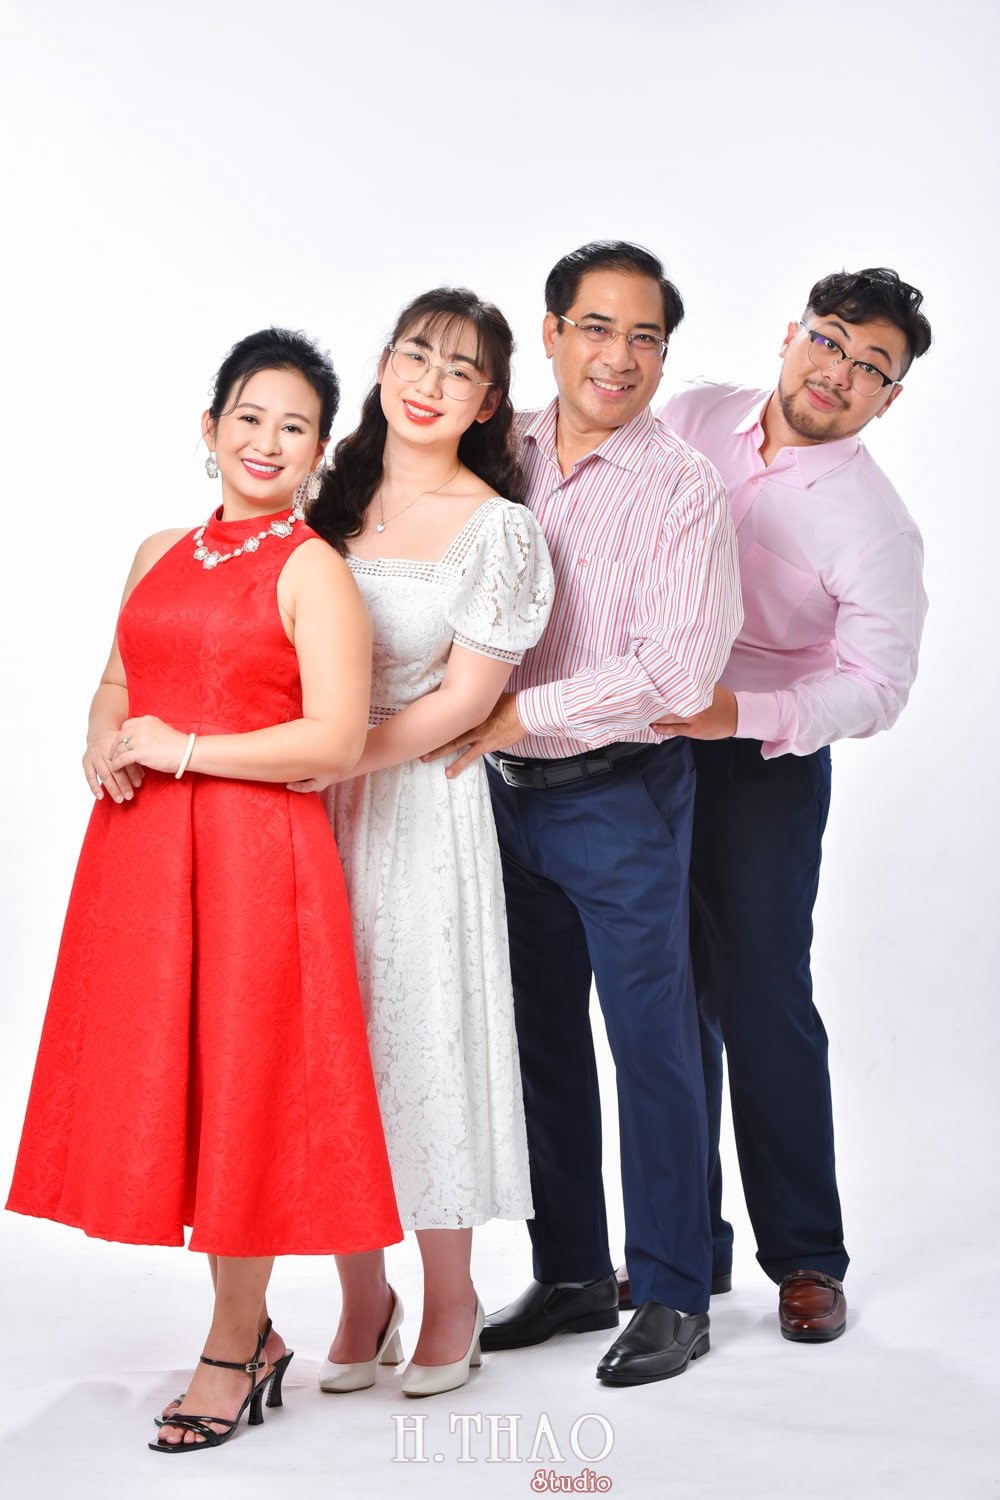 Anh gia dinh 4 nguoi 17 min - Studio chụp ảnh gia đình tự nhiên nhất tại Tp.HCM – HThao Studio